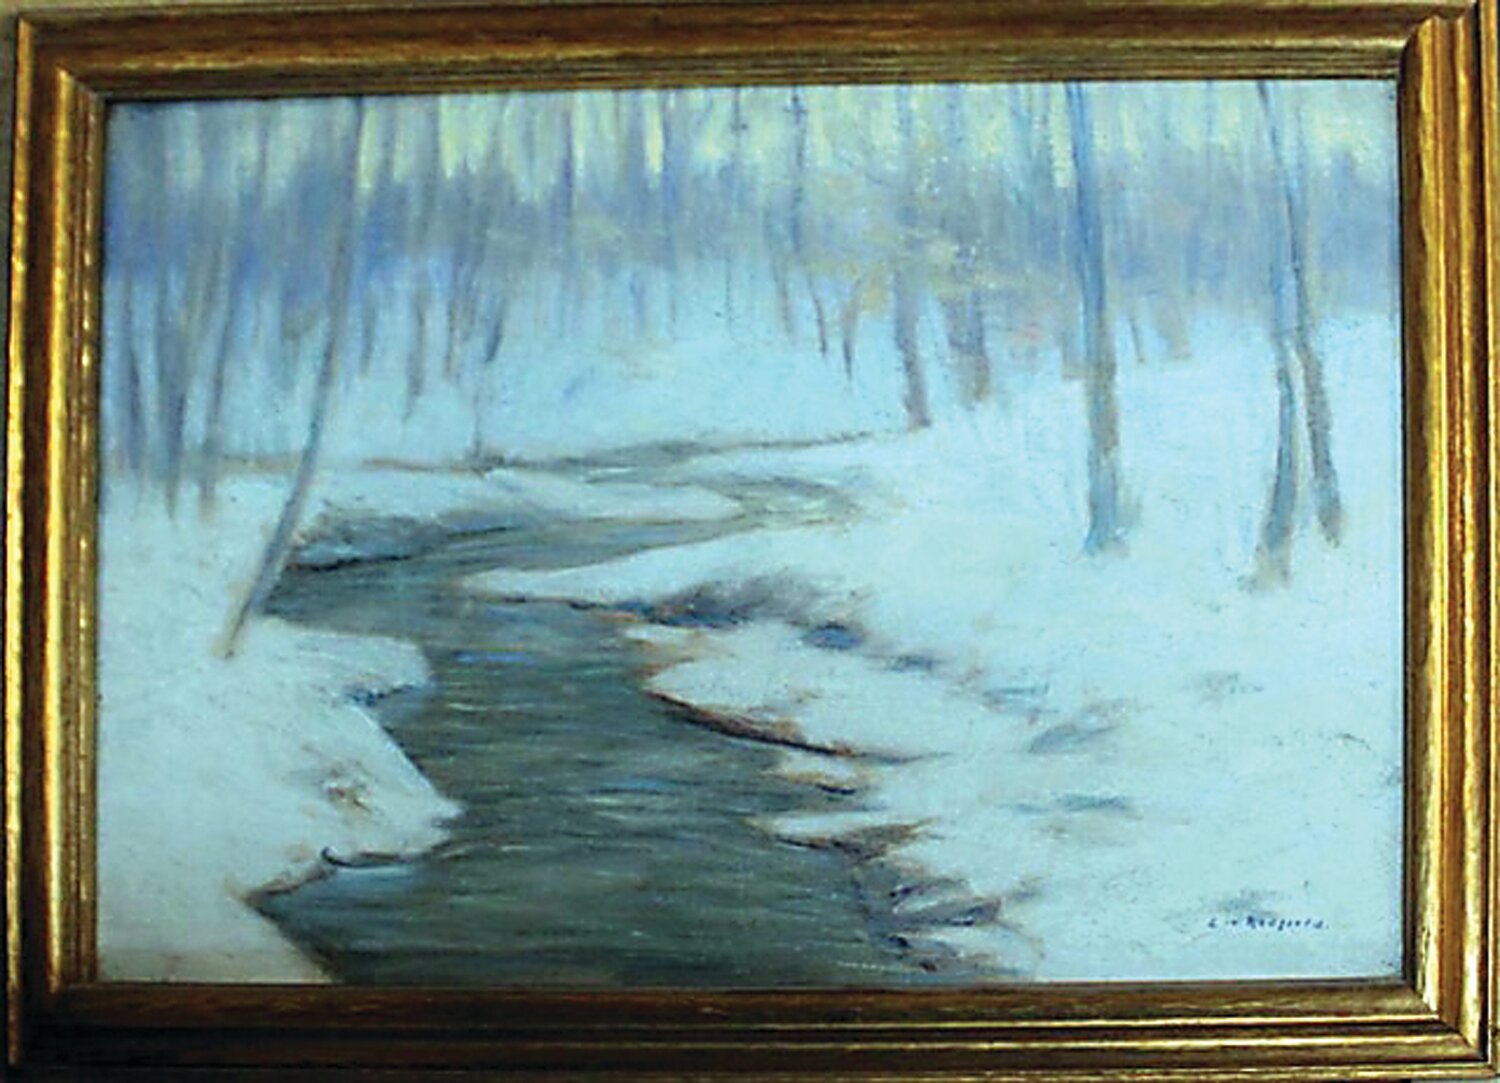 “Winter Creek” is by Edward Redfield.